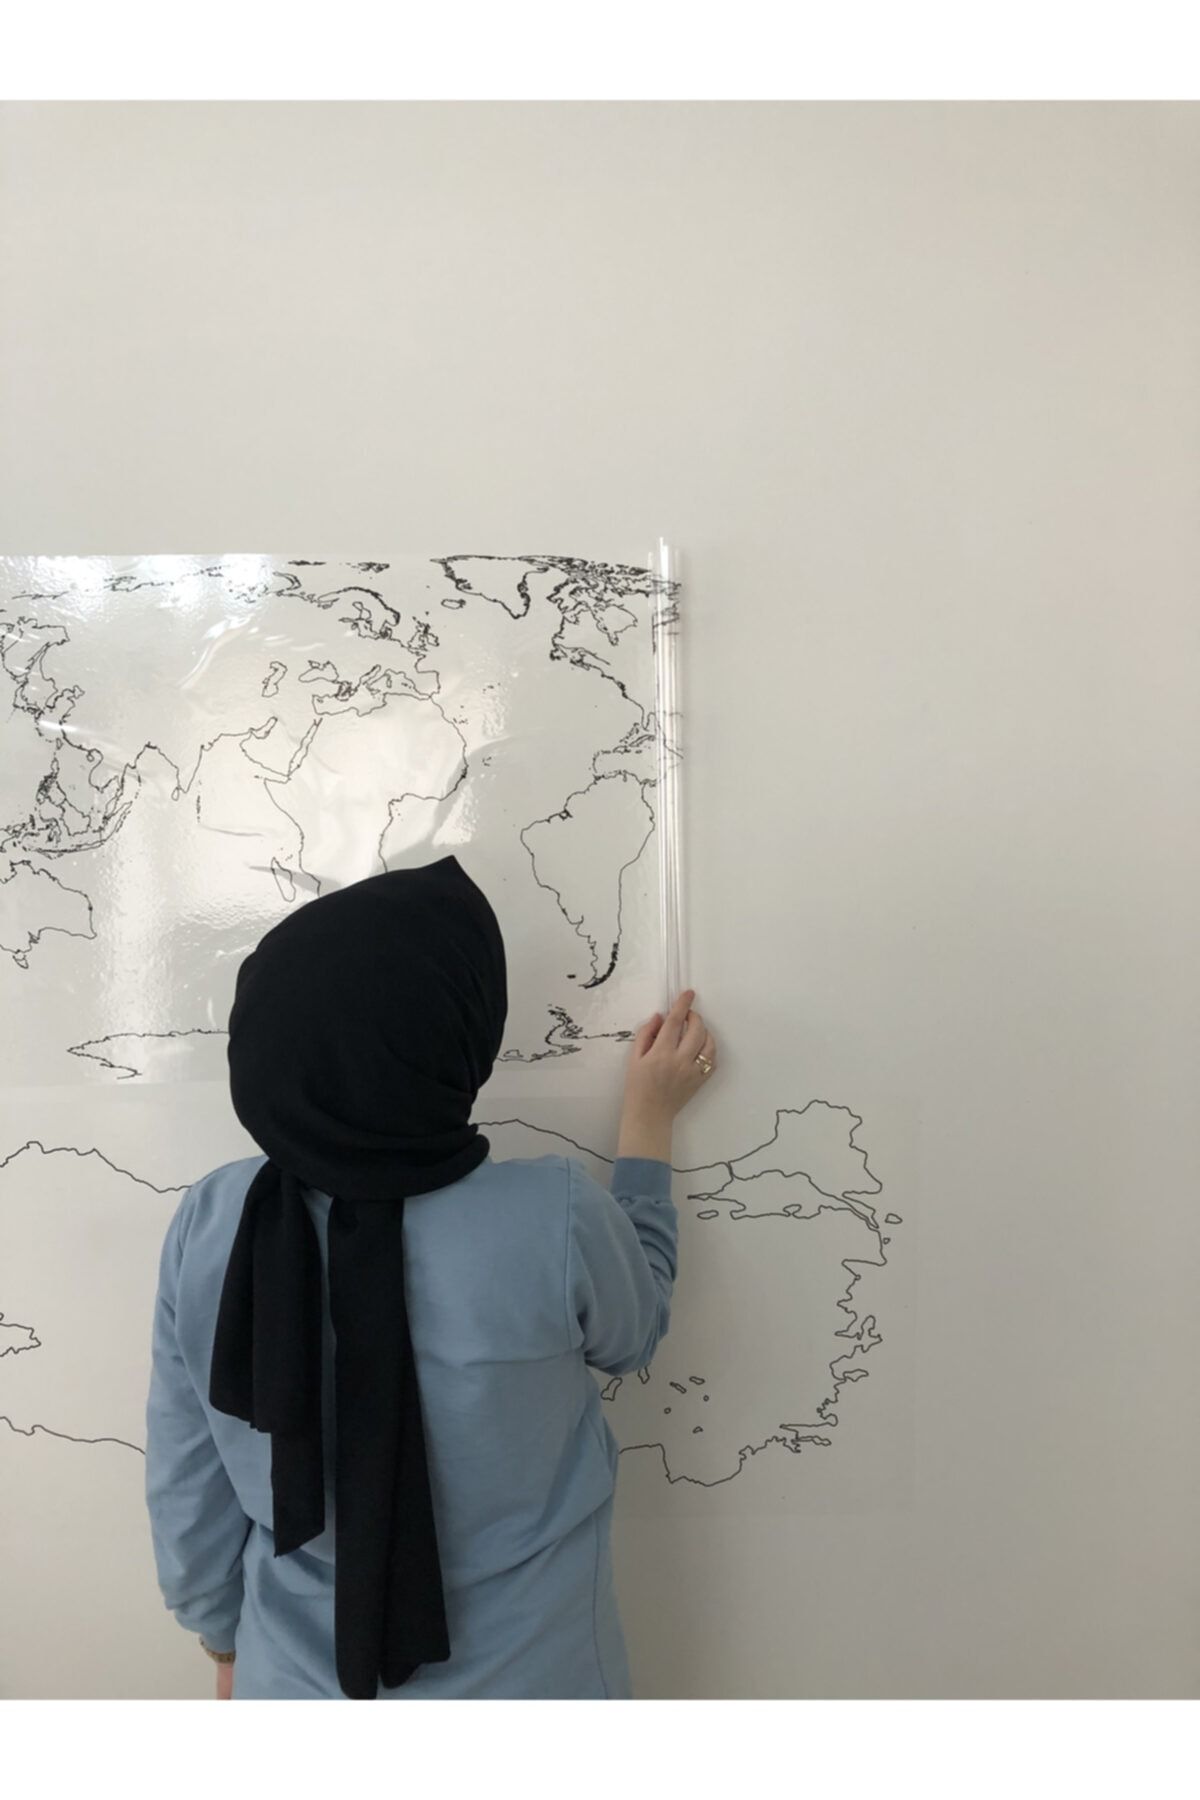 Tutunabilir Kağıt Dilsiz Türkiye Ve Dünya Haritası Yazı Tahtası Akıllı Kağıt Tahta + Kalem 2'li Ürün Seti